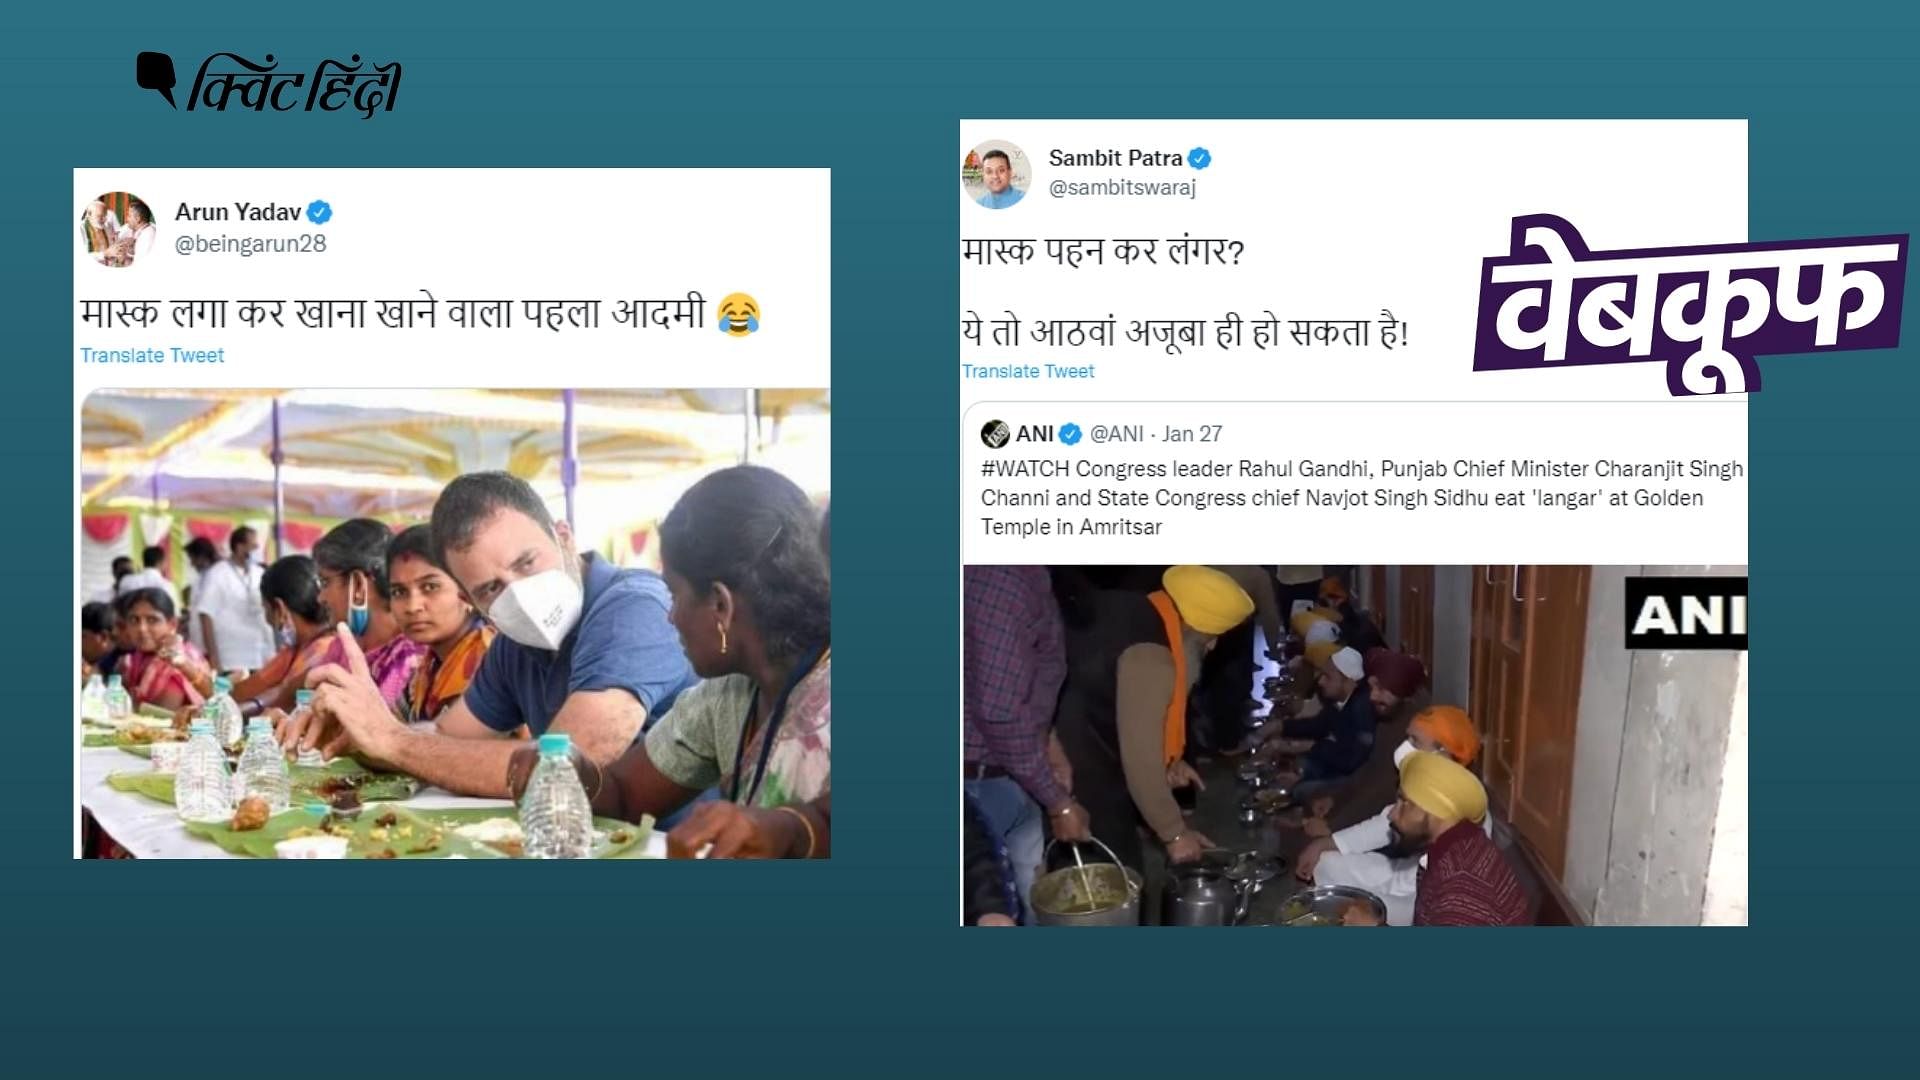 <div class="paragraphs"><p>तस्वीर और वीडियो शेयर कर दावा, मास्क पहने हुए खाना खा रहे राहुल गांधी</p></div>